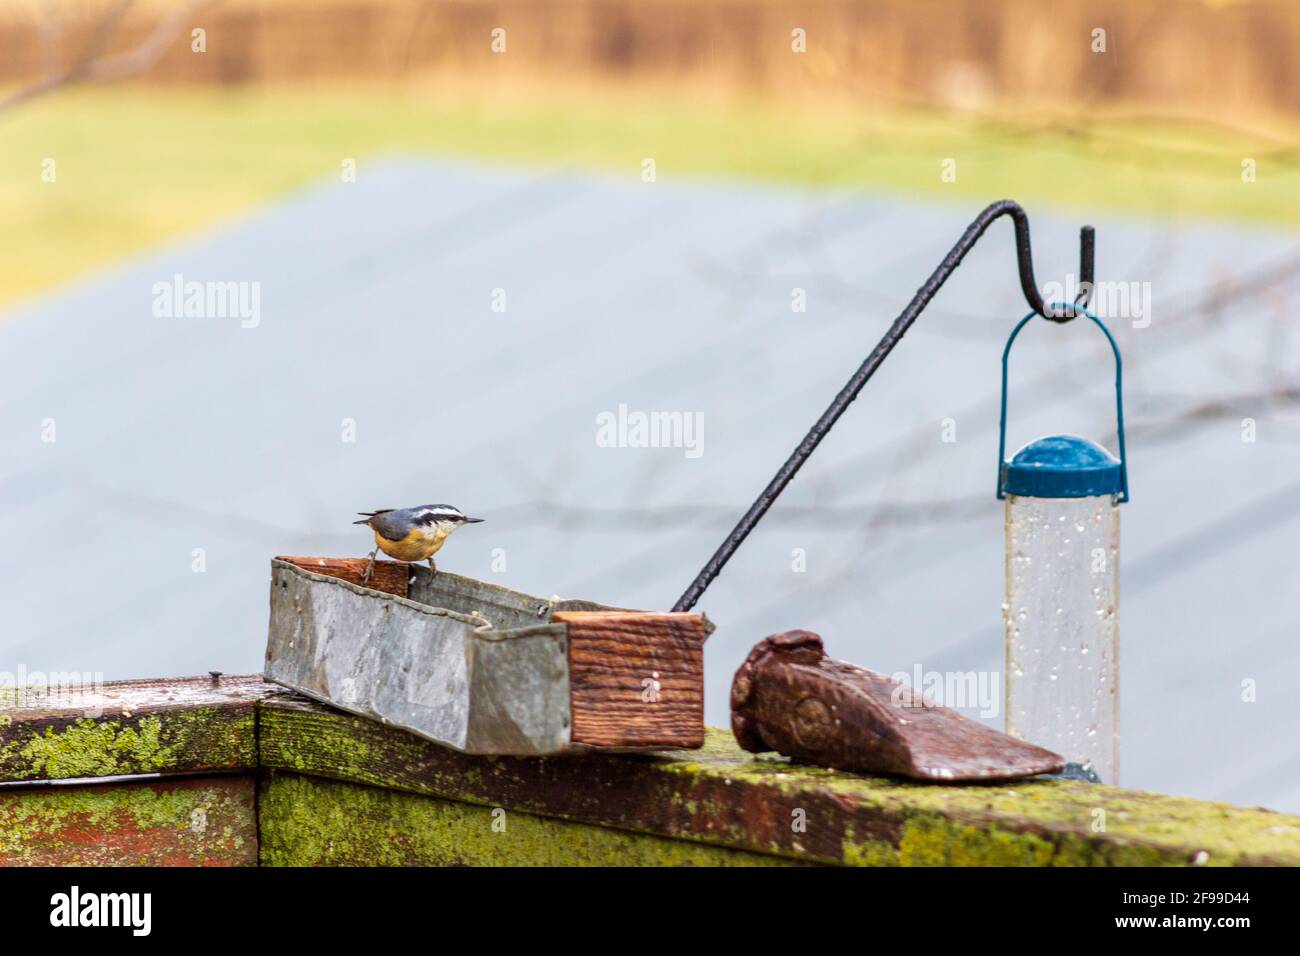 Un Nuthatch, Sitta canadensis, visite un mangeoire à oiseaux rustique lors d'une journée de printemps fraîche. Banque D'Images